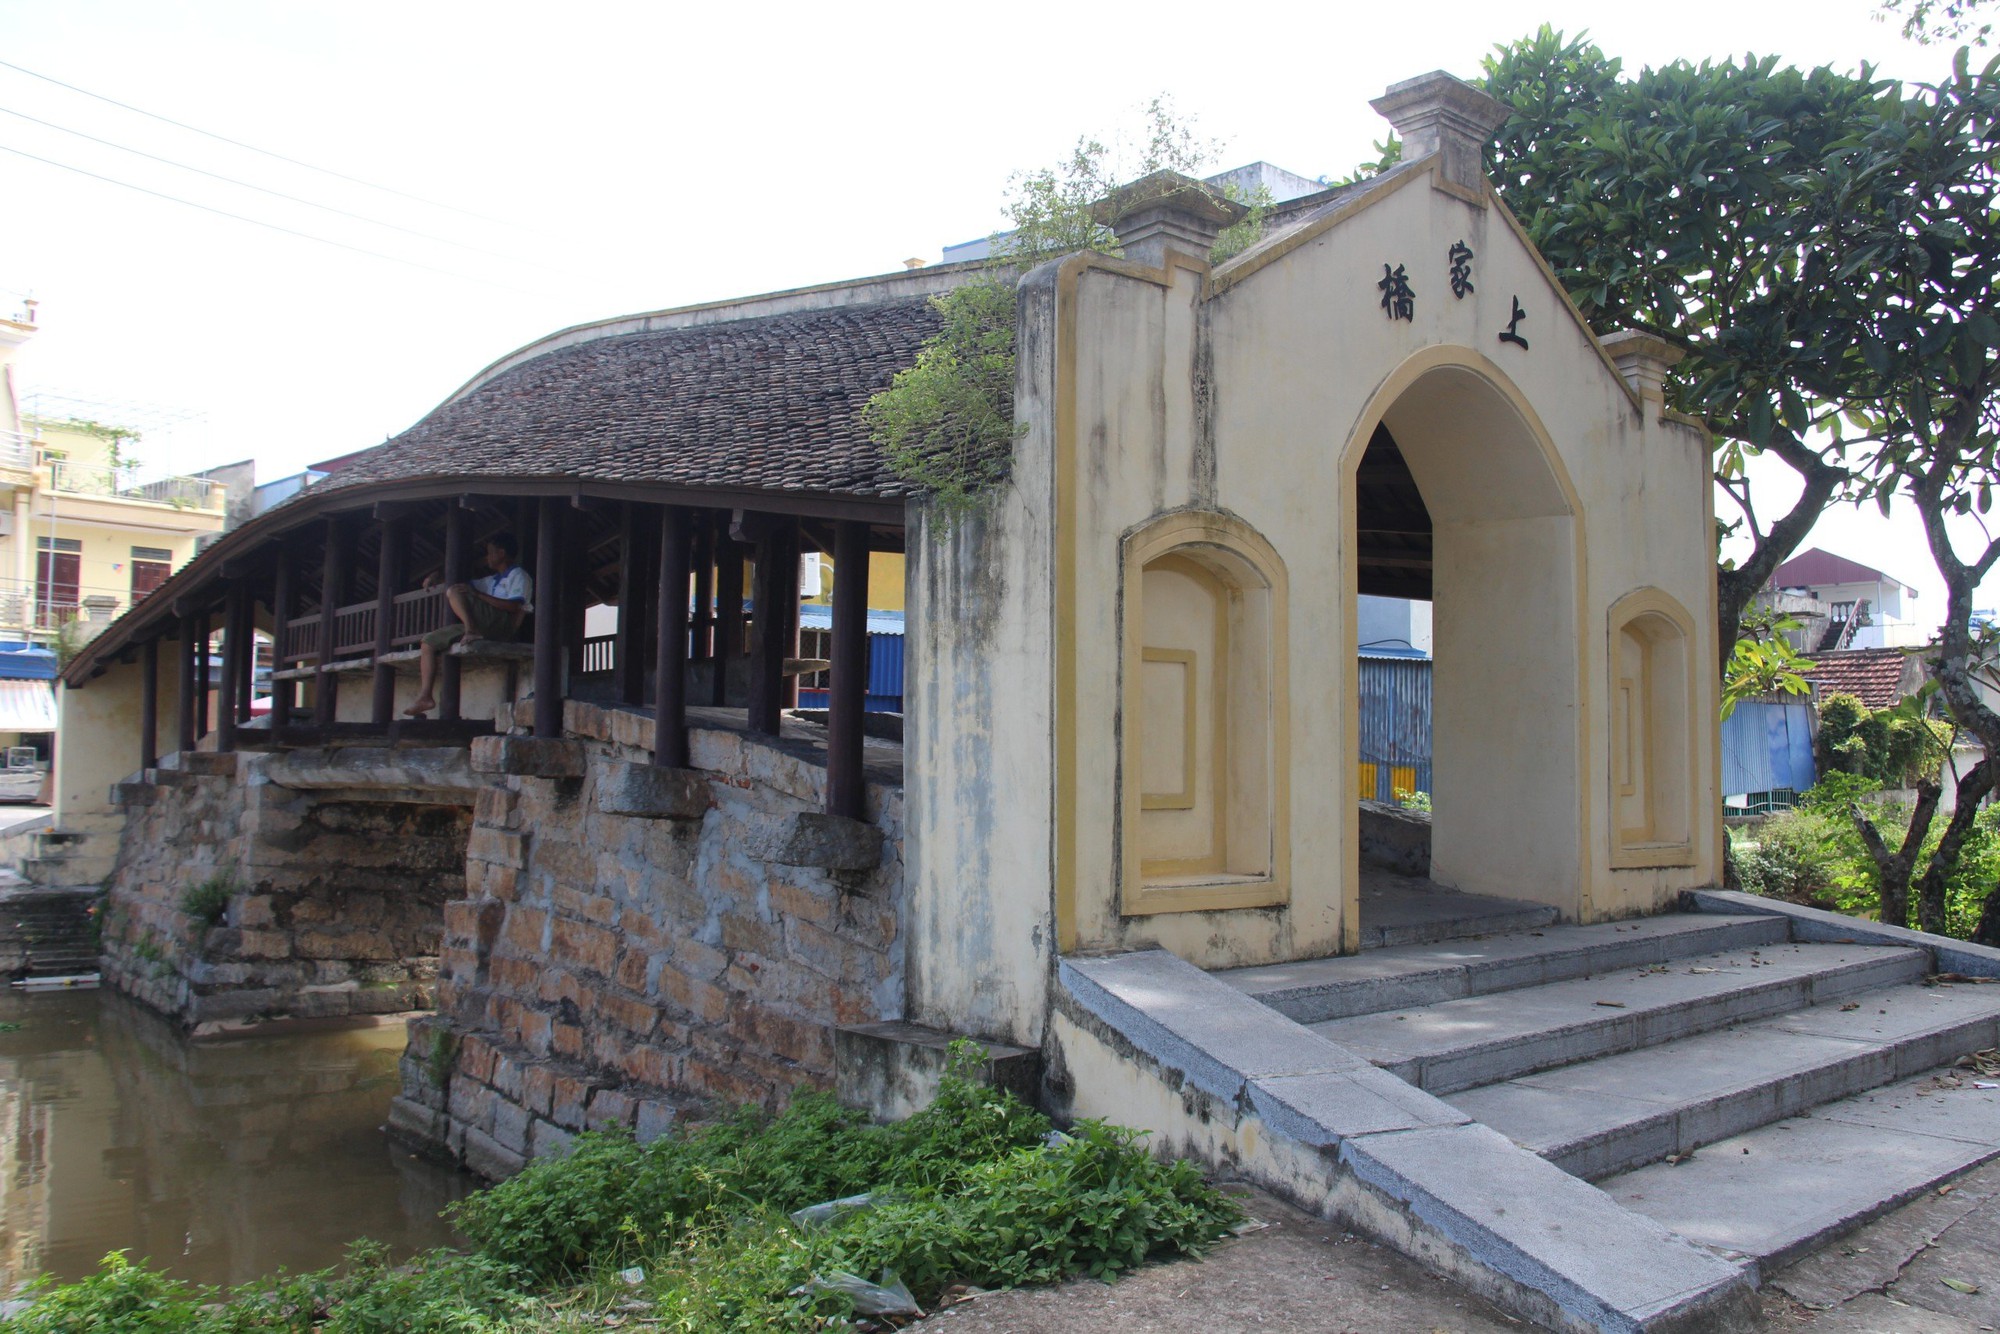  Ghé thăm cầu ngói Thượng Nông hơn 300 tuổi ở Nam Định - Ảnh 2.